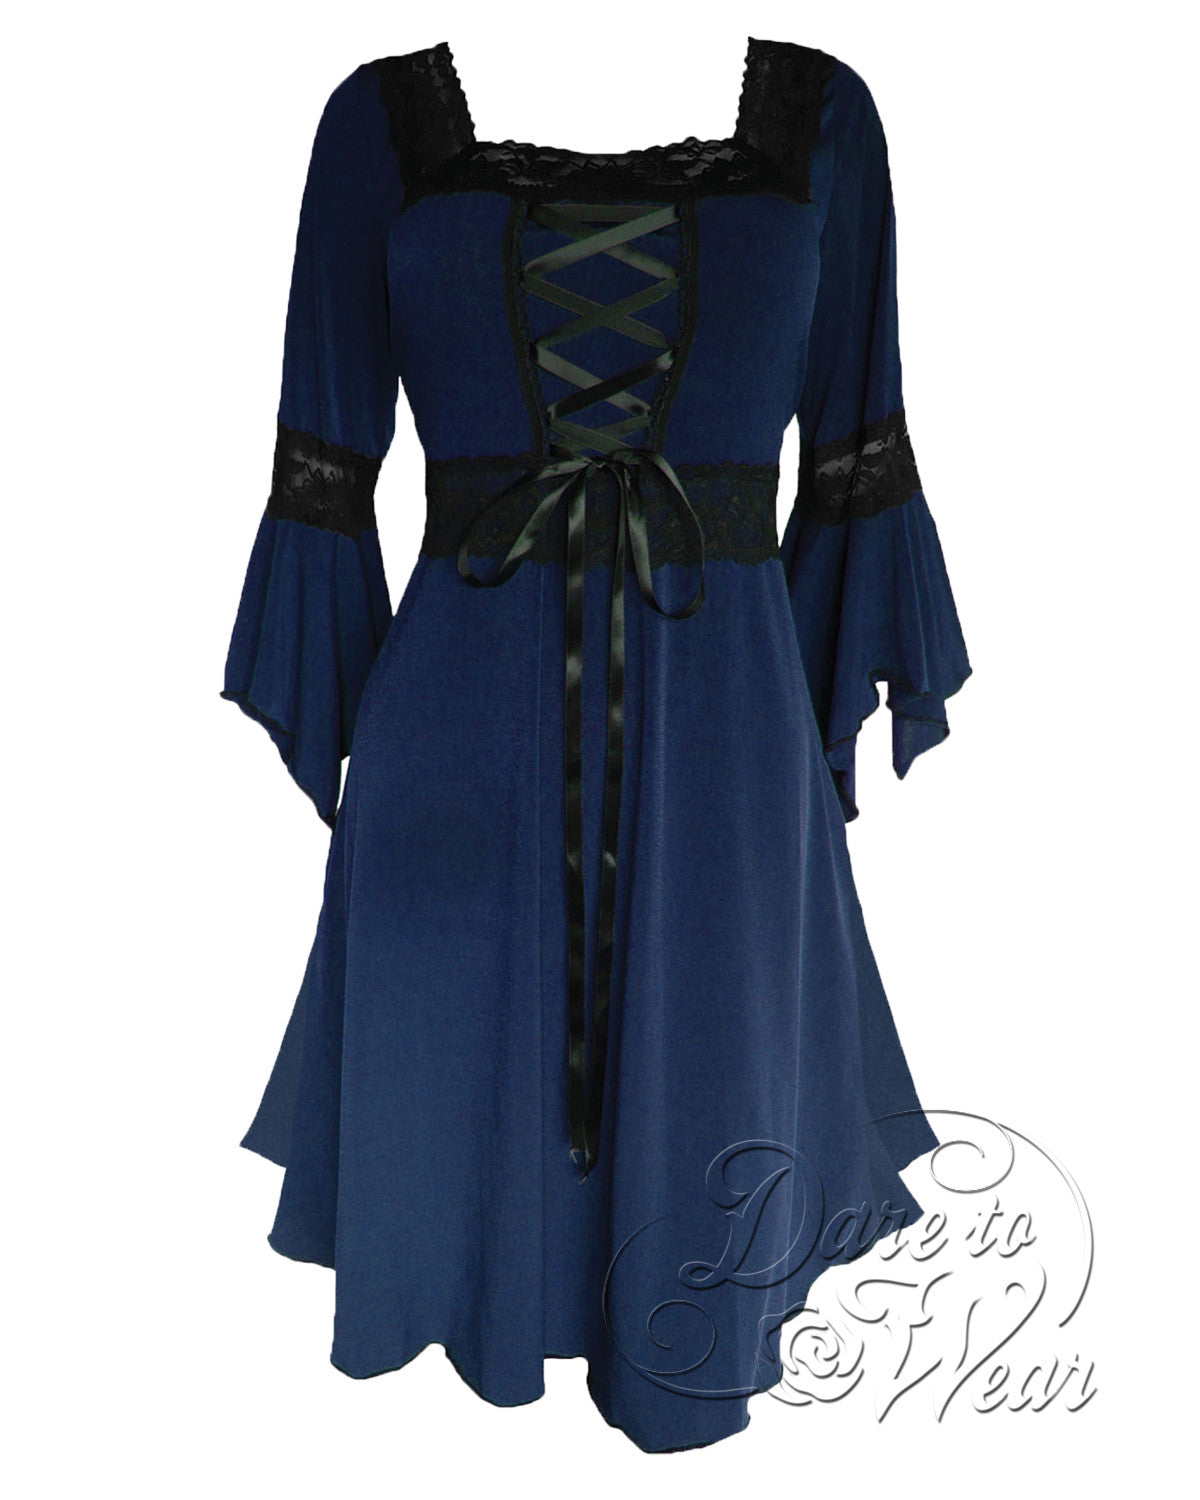 Renaissance Dress in Midnight  Indigo Blue Gothic Victorian